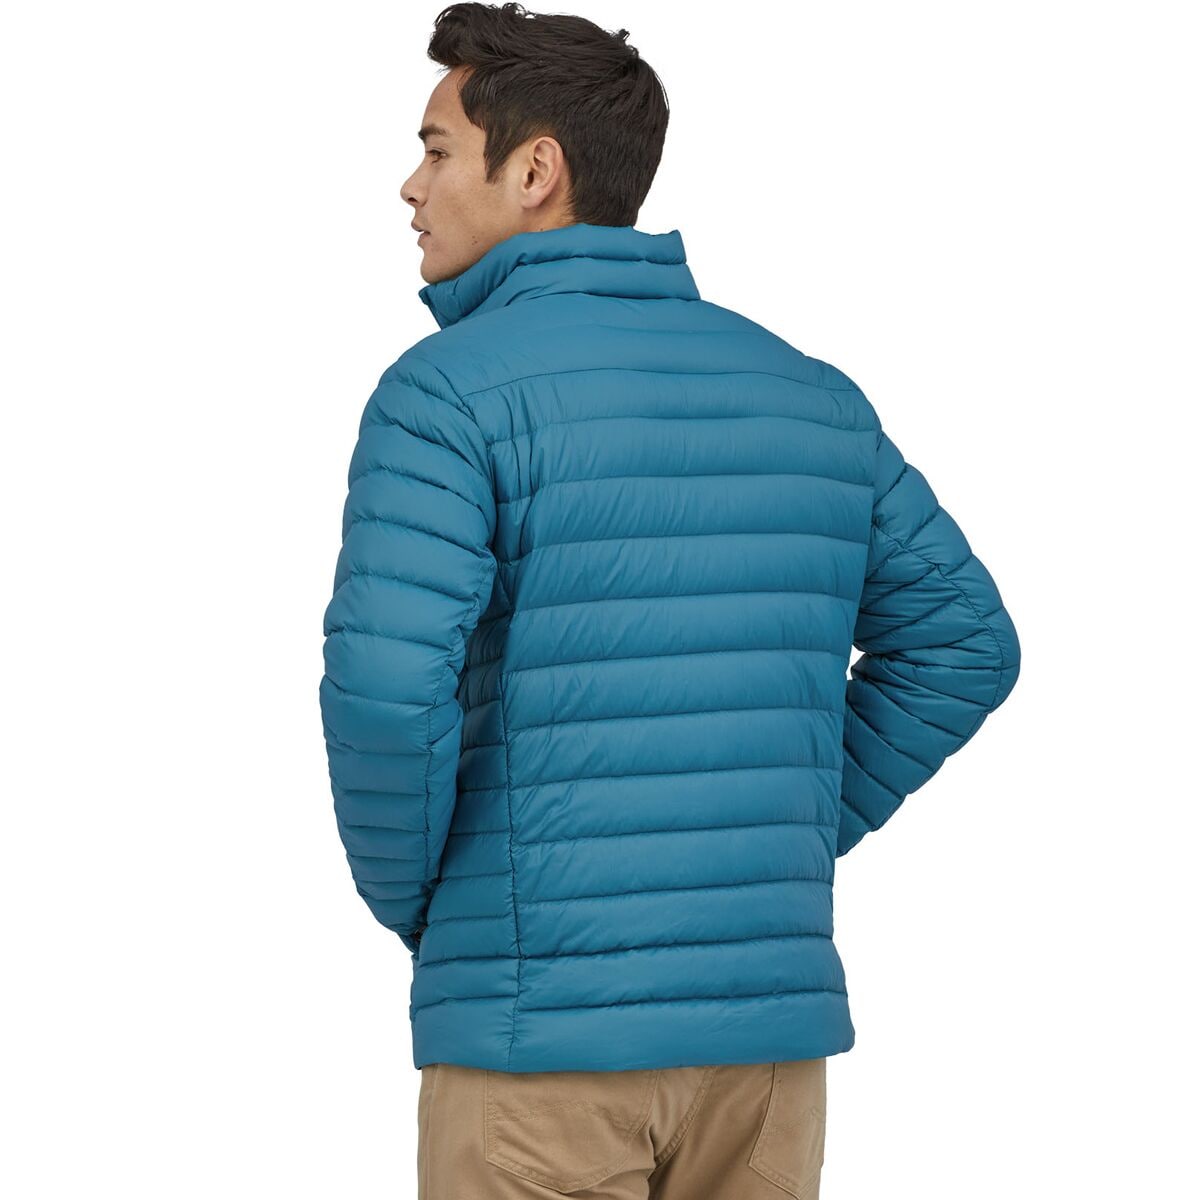 Patagonia Sweater Jacket Men's - Clothing